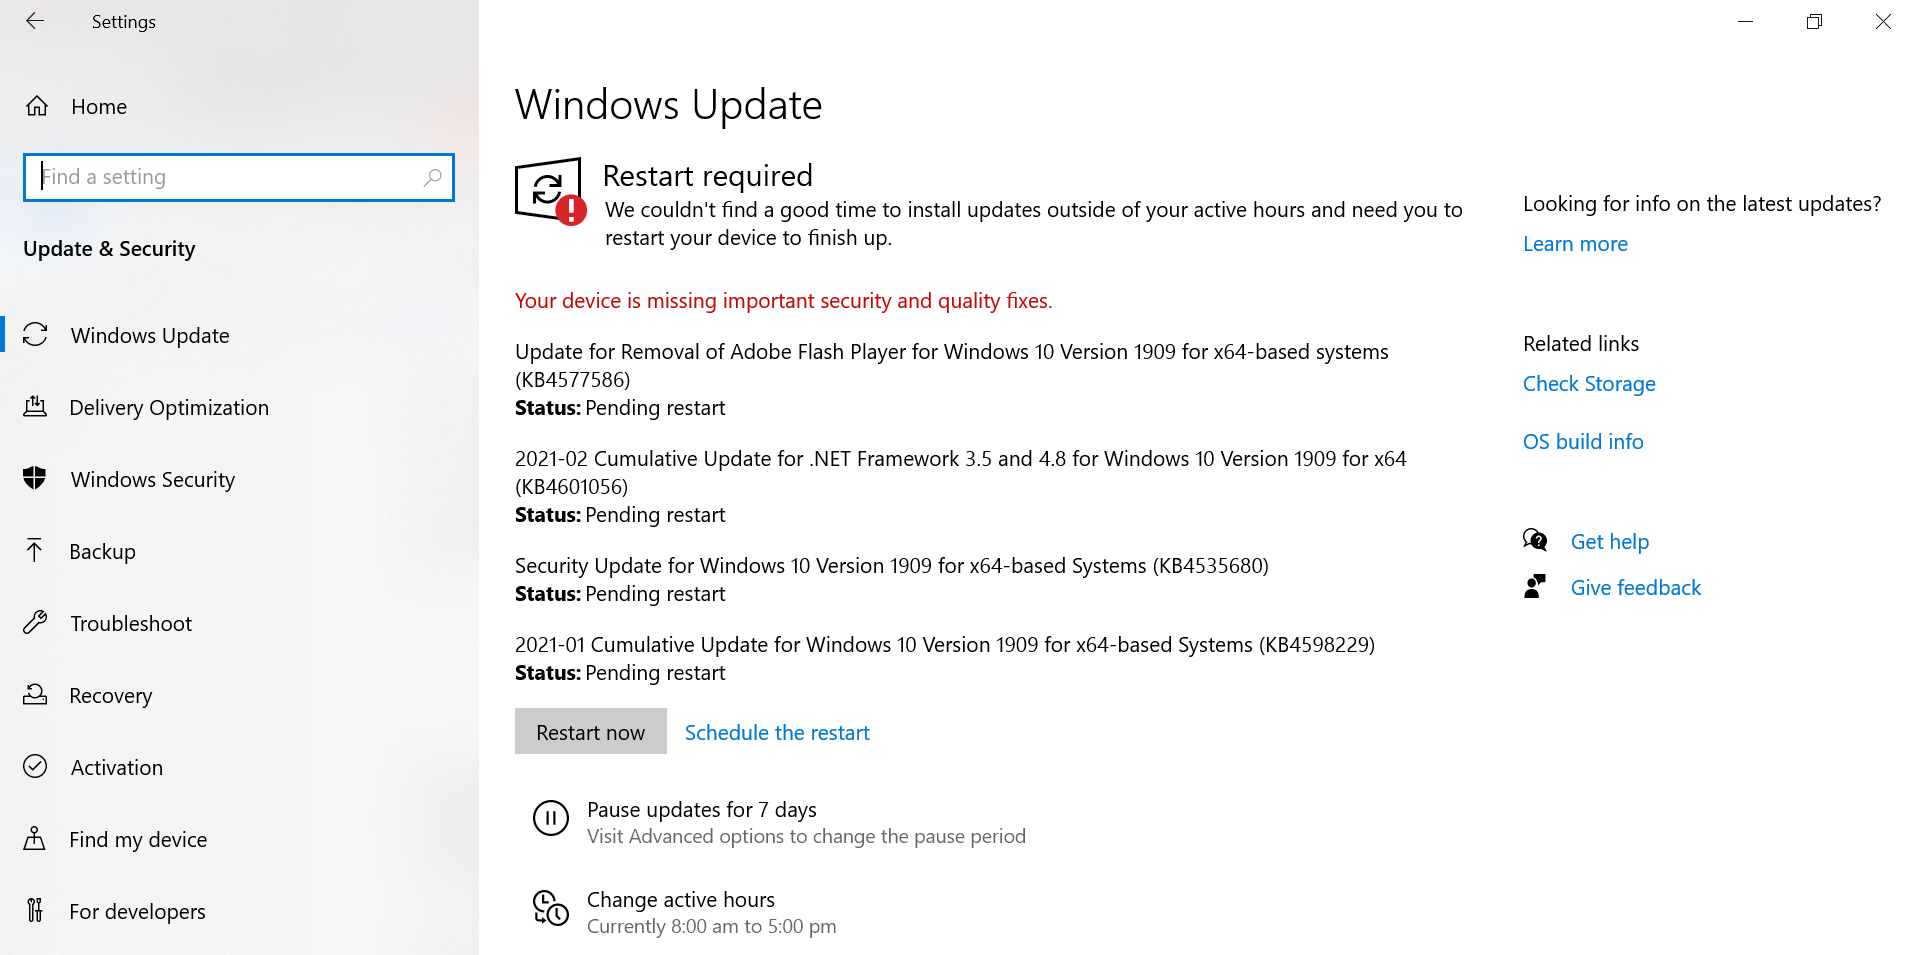 Windows Update - Restart Required